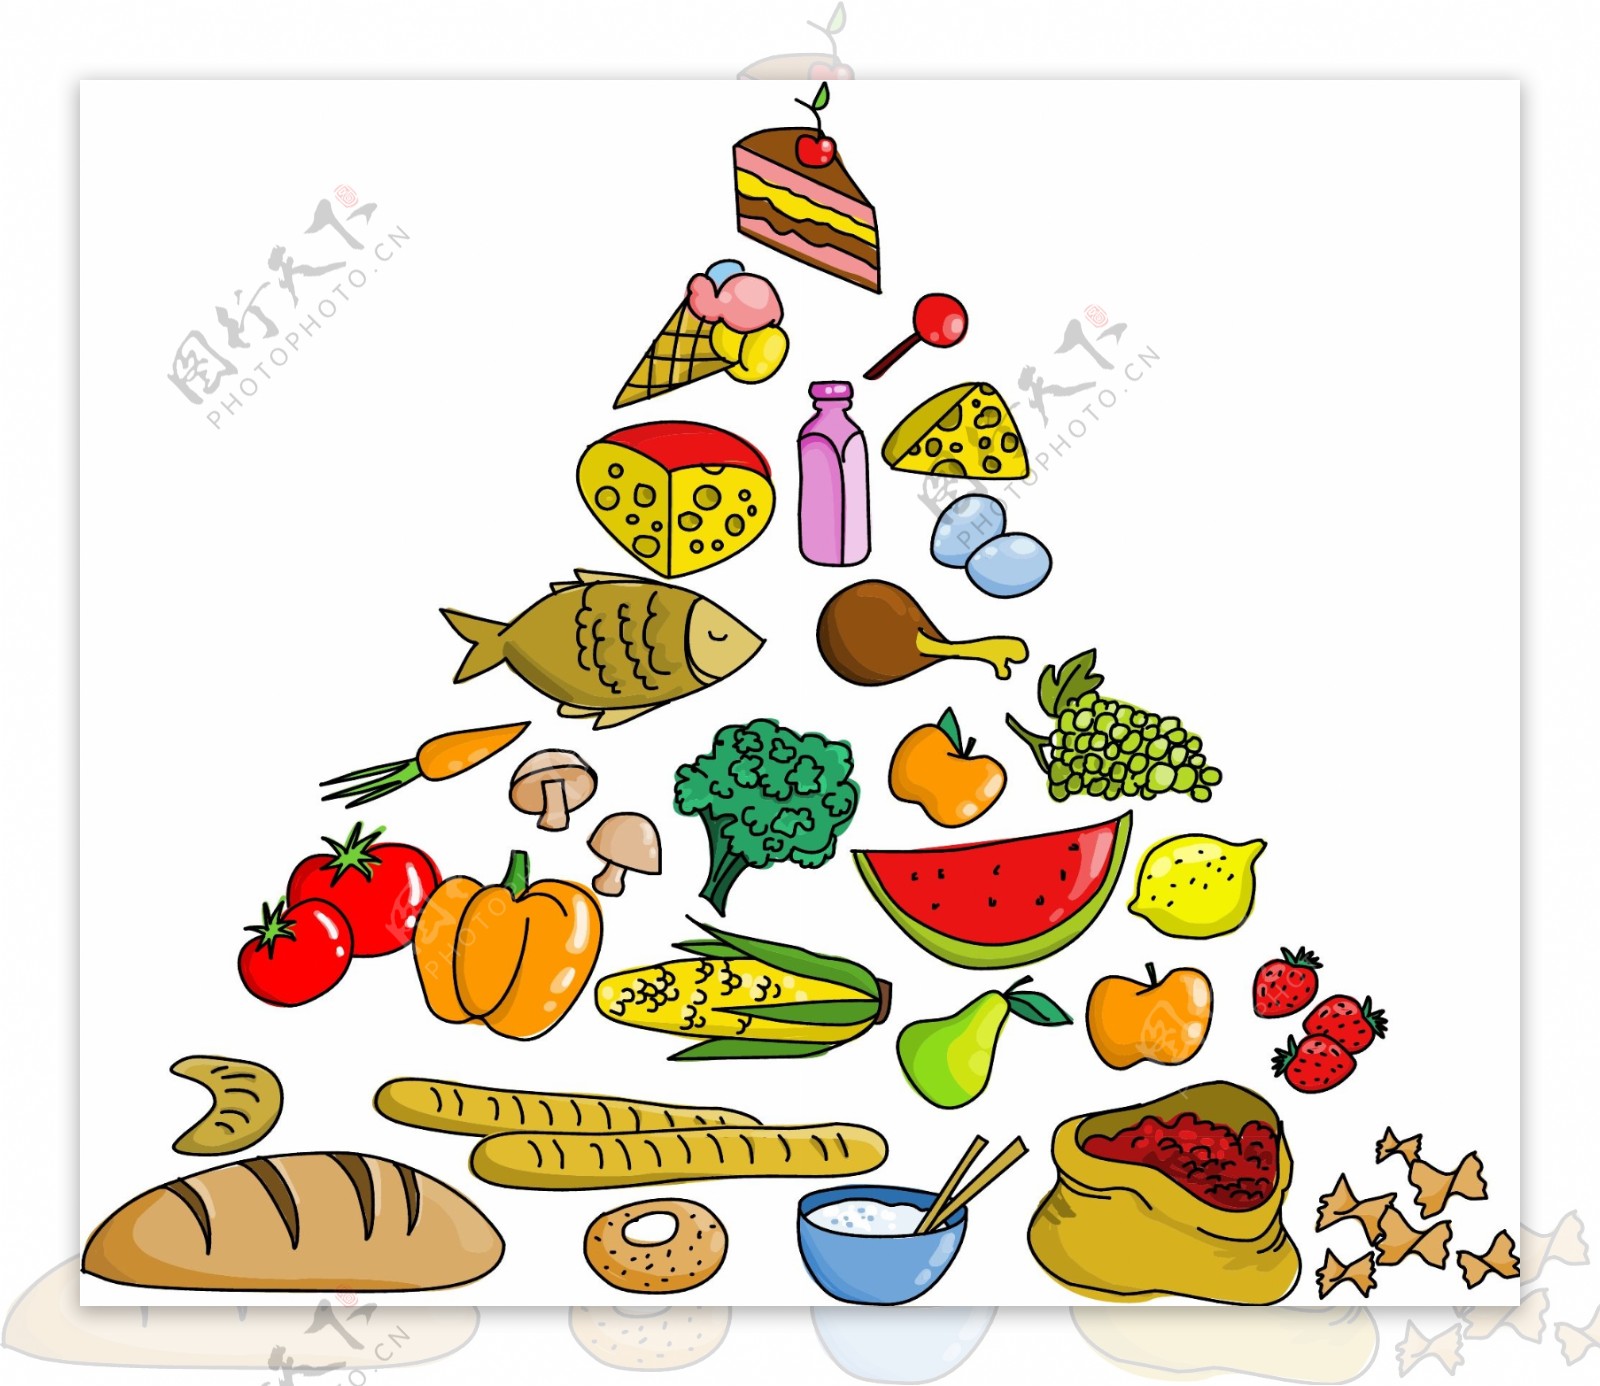 矢量食品水果图案金字塔设计